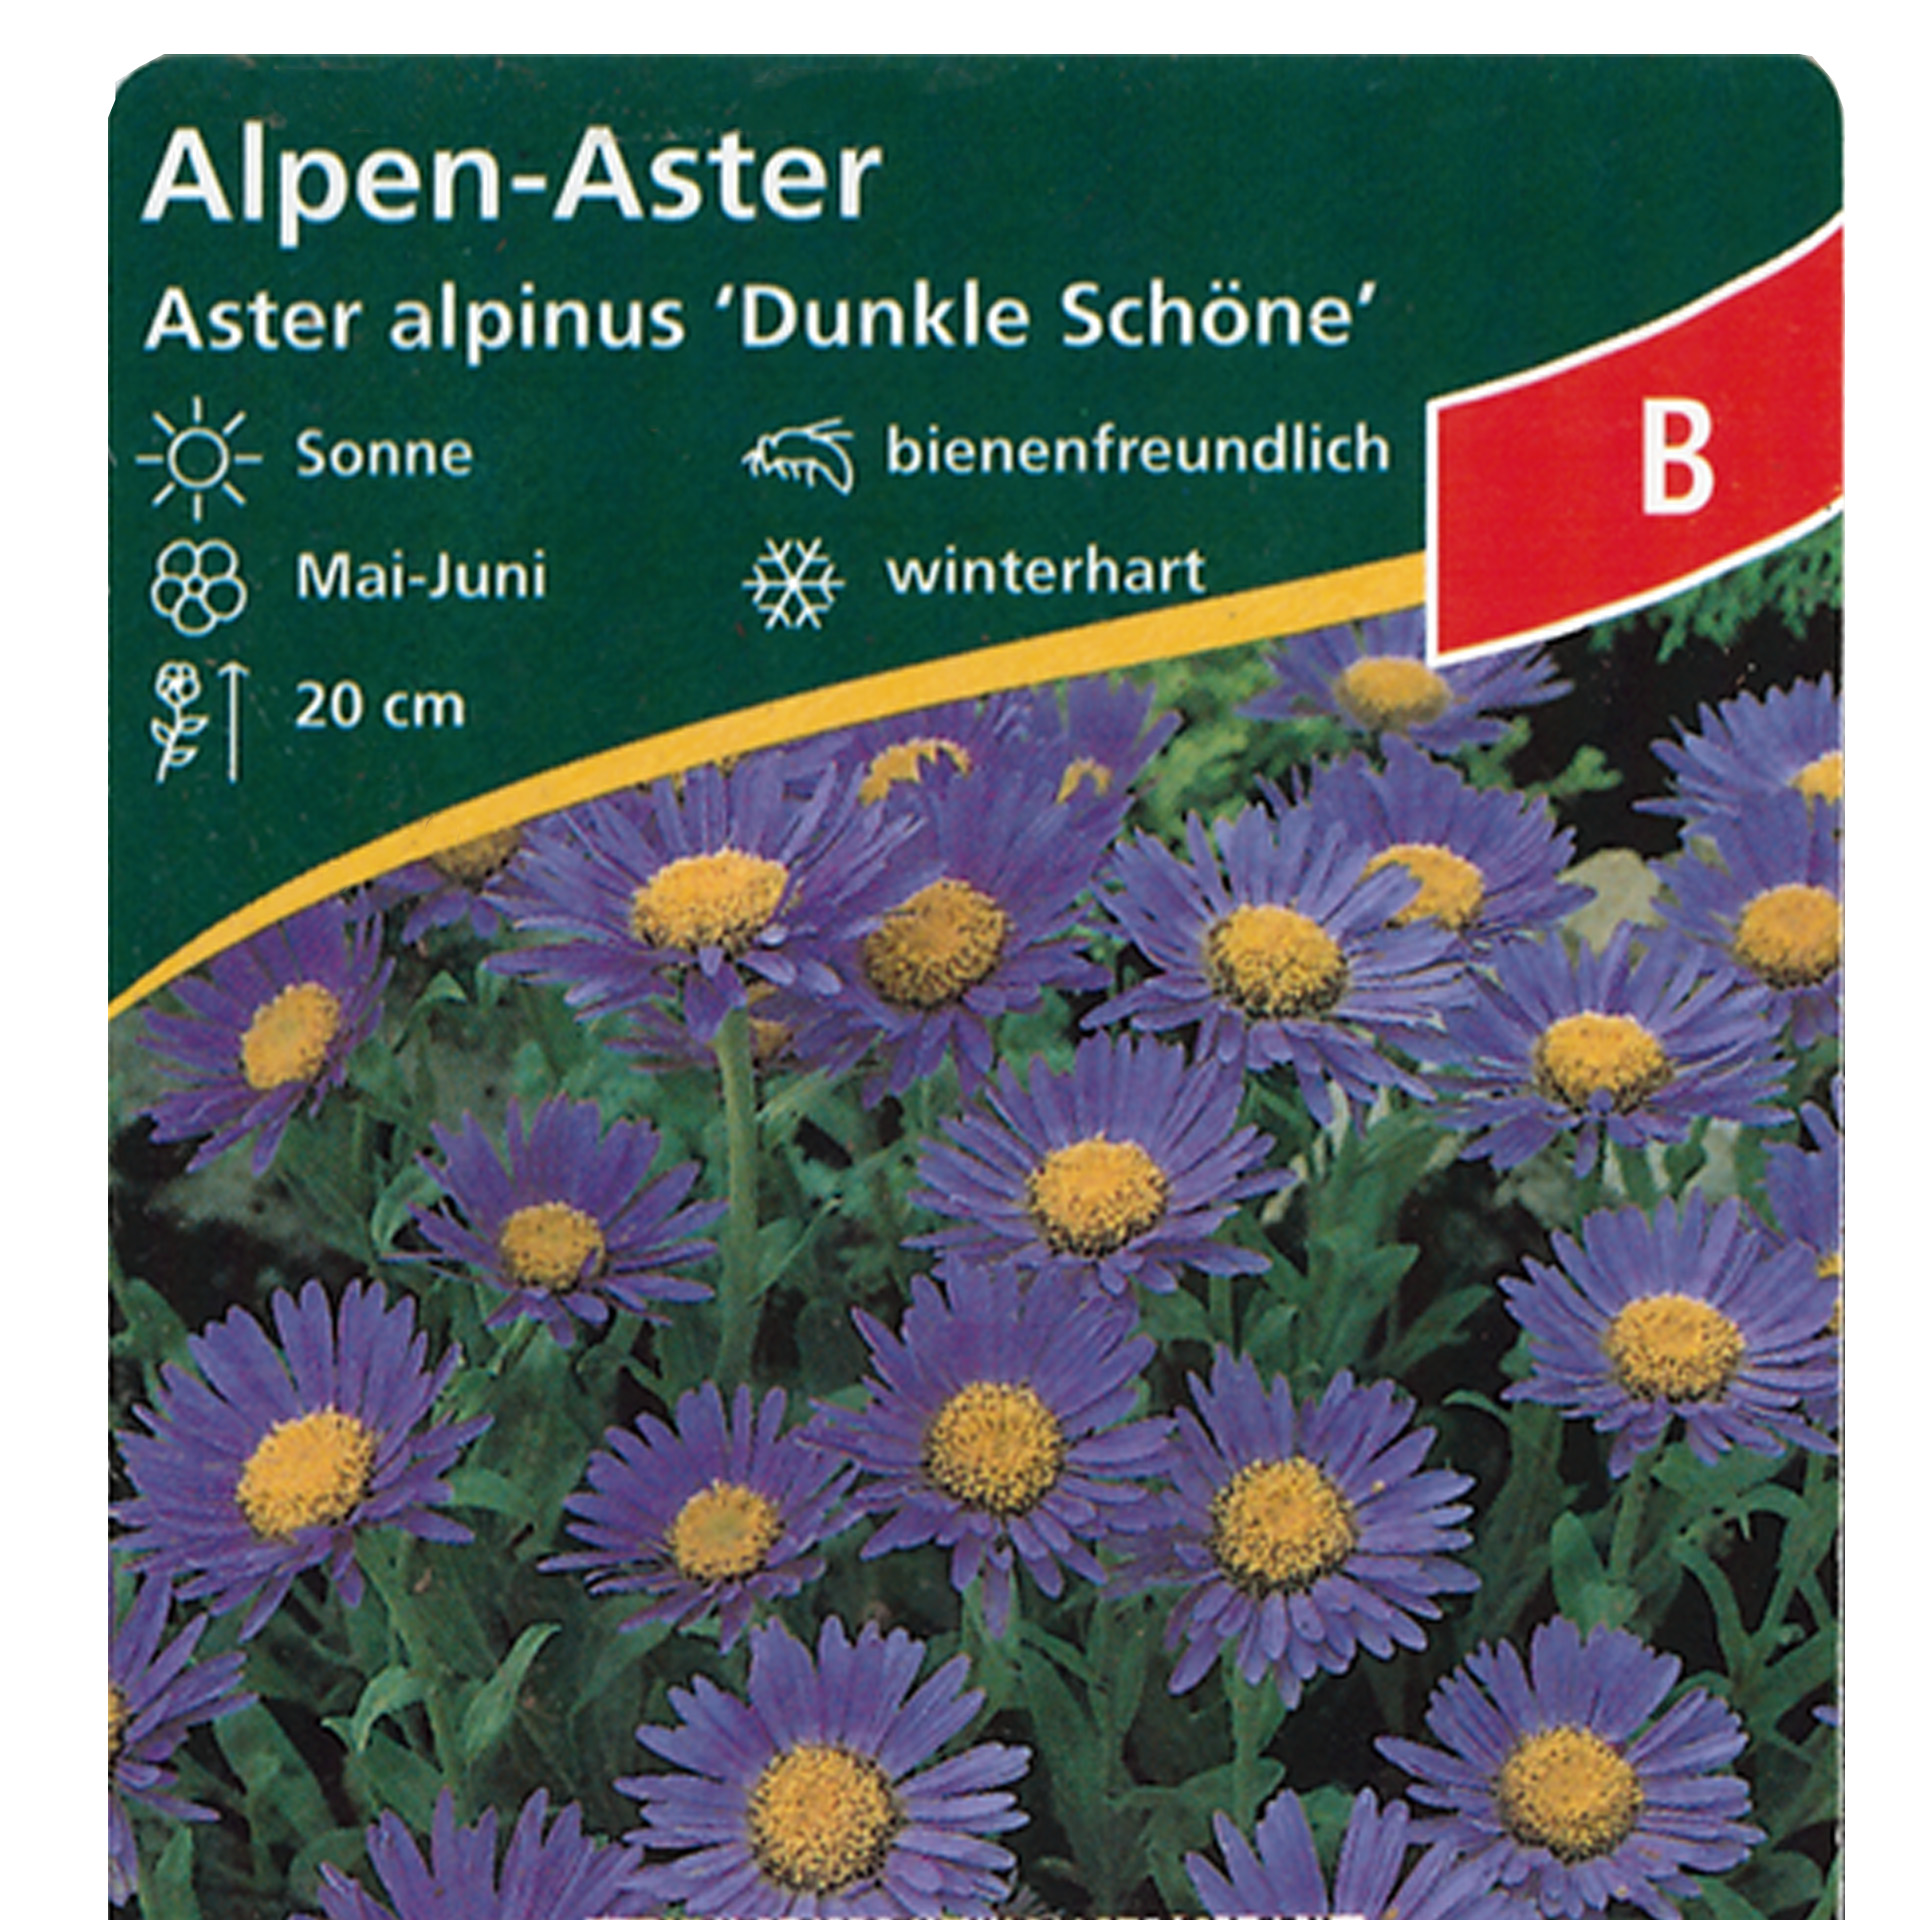 Alpen-Aster - Aster alpinus 'Dunkle Schöne' violett, 9cm Topf